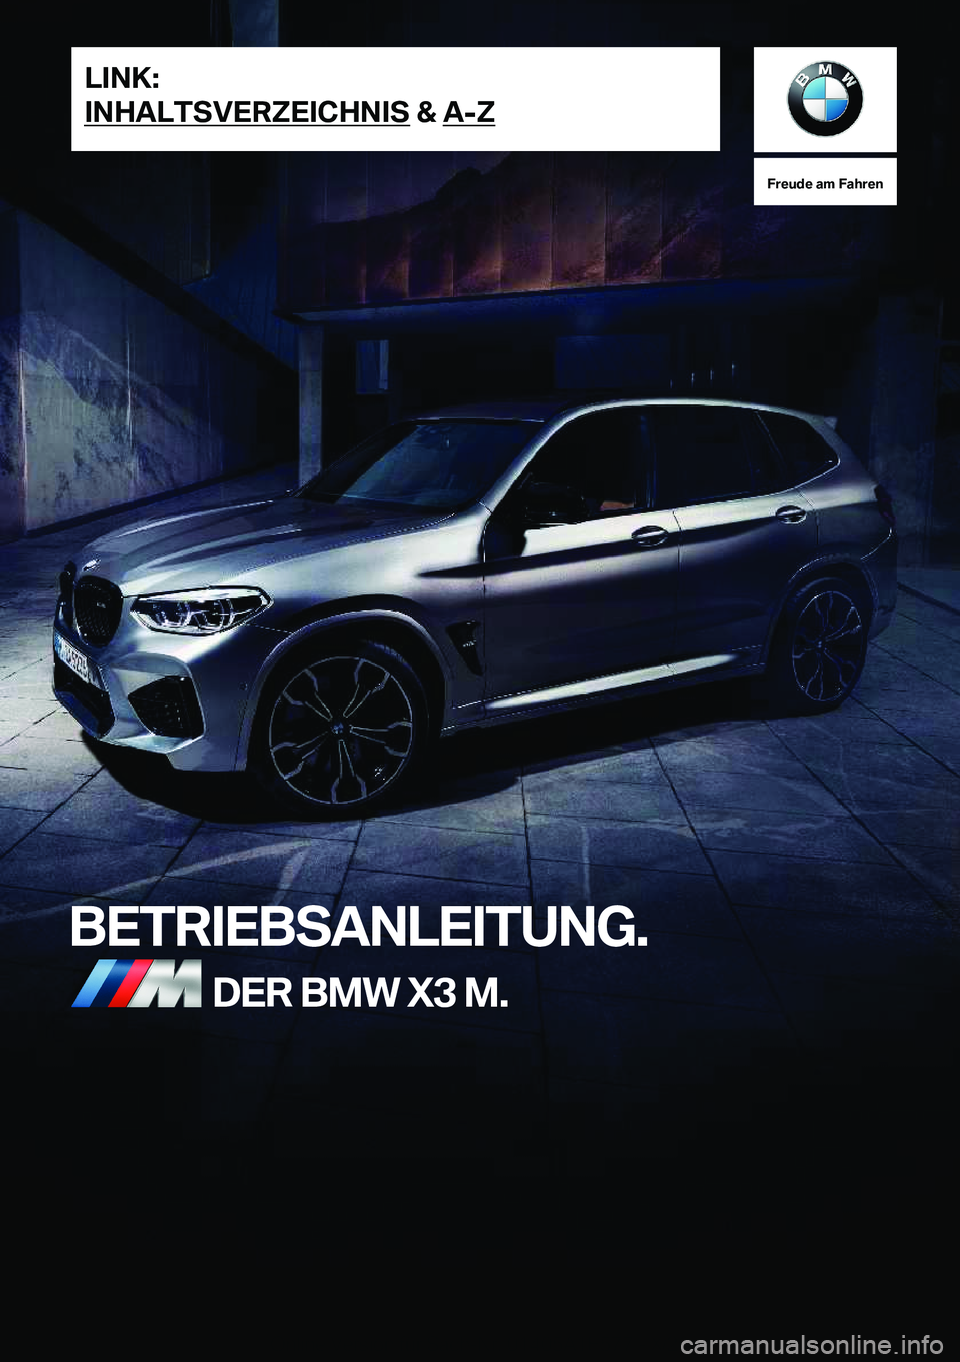 BMW X3 M 2021  Betriebsanleitungen (in German) �F�r�e�u�d�e��a�m��F�a�h�r�e�n
�B�E�T�R�I�E�B�S�A�N�L�E�I�T�U�N�G�.�D�E�R��B�M�W��X�3��M�.�L�I�N�K�:
�I�N�H�A�L�T�S�V�E�R�Z�E�I�C�H�N�I�S��&��A�-�Z�O�n�l�i�n�e��V�e�r�s�i�o�n��f�